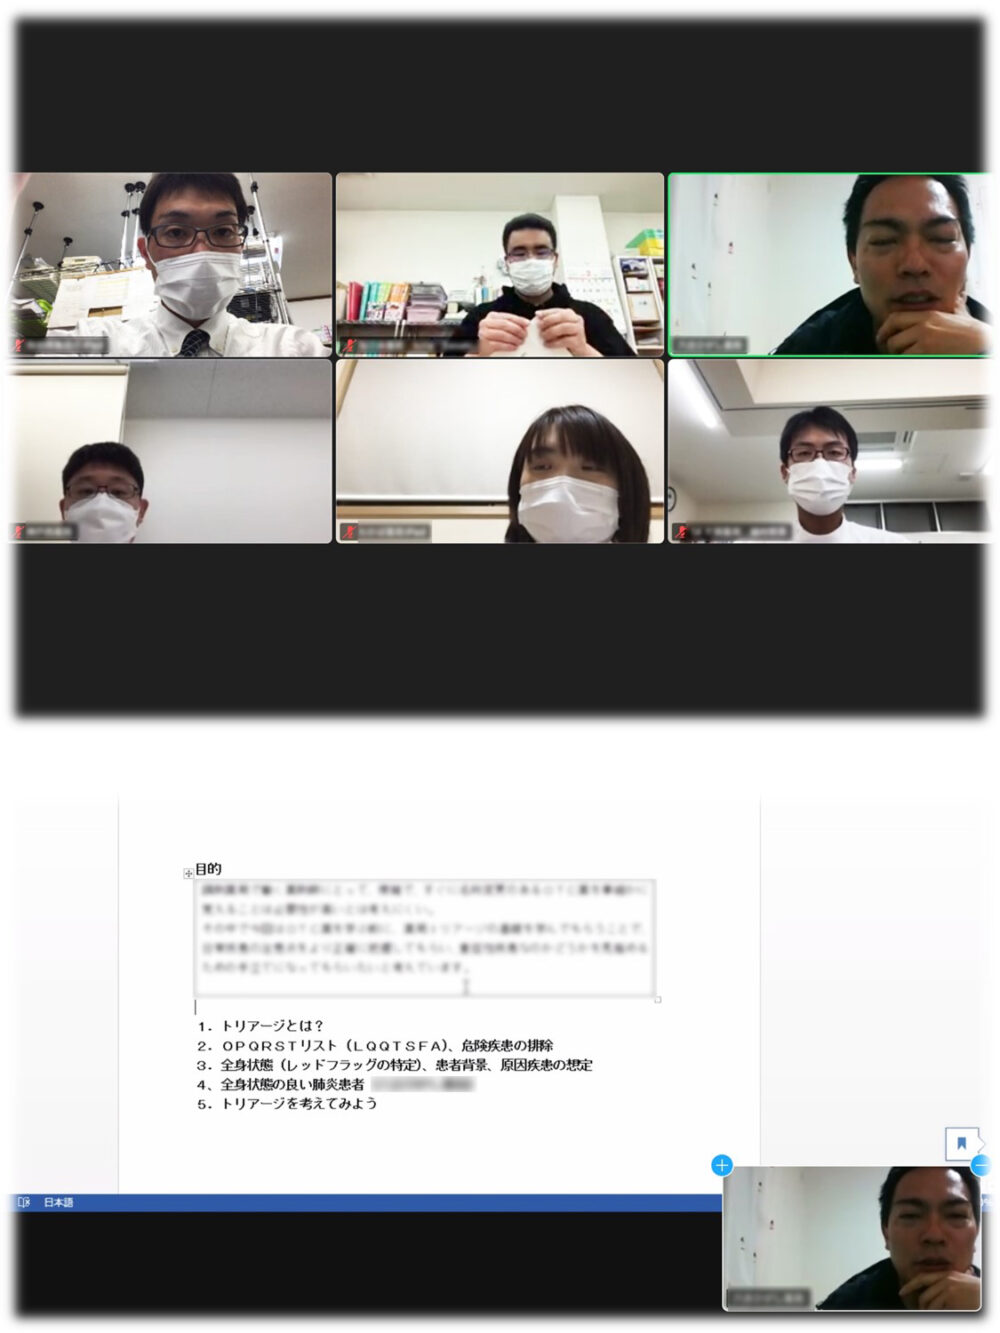 はいやくブログ ページ 2 はいやくリクルート 静岡県の調剤薬局 薬剤師募集 新卒採用情報